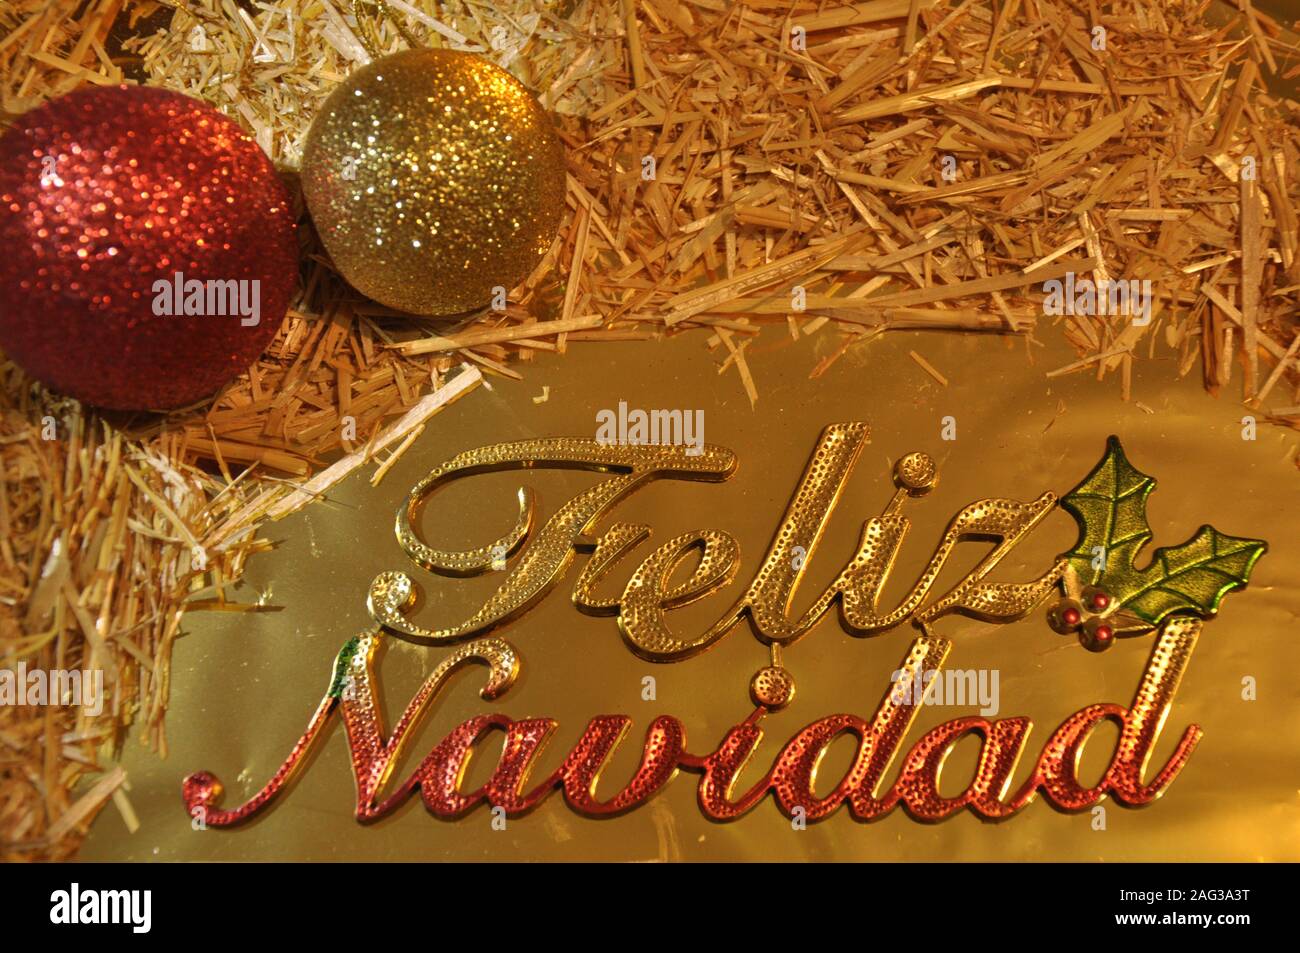 Buon Natale In Cubano.Saluto In Spagnolo Immagini E Fotos Stock Alamy